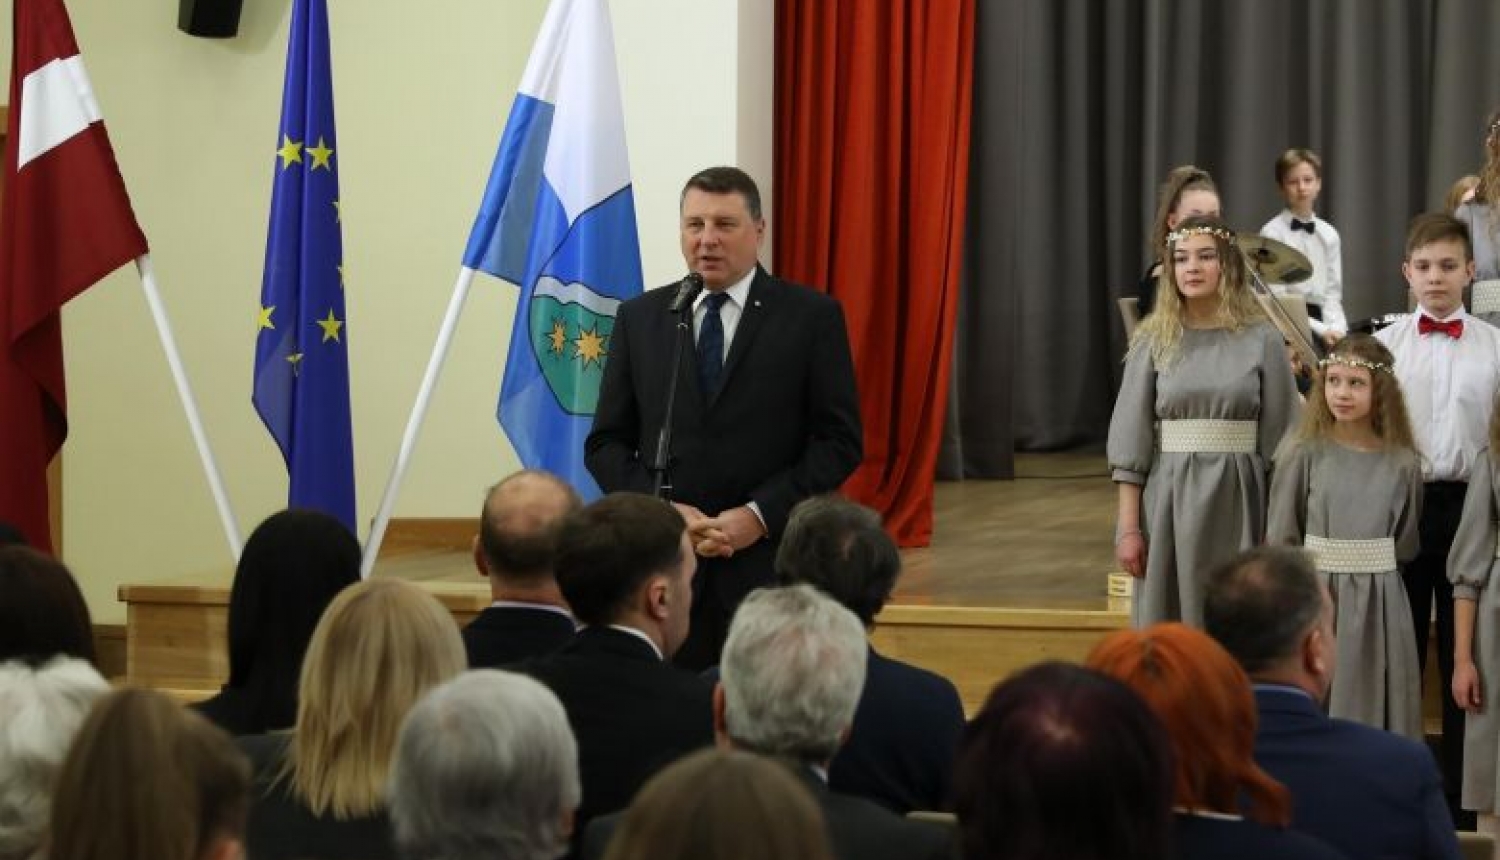 Valsts prezidents: akcija “Draudzīgais aicinājums 2019” ir mūsu iespēja sniegt savu ieguldījumu labākai izglītībai Latvijā